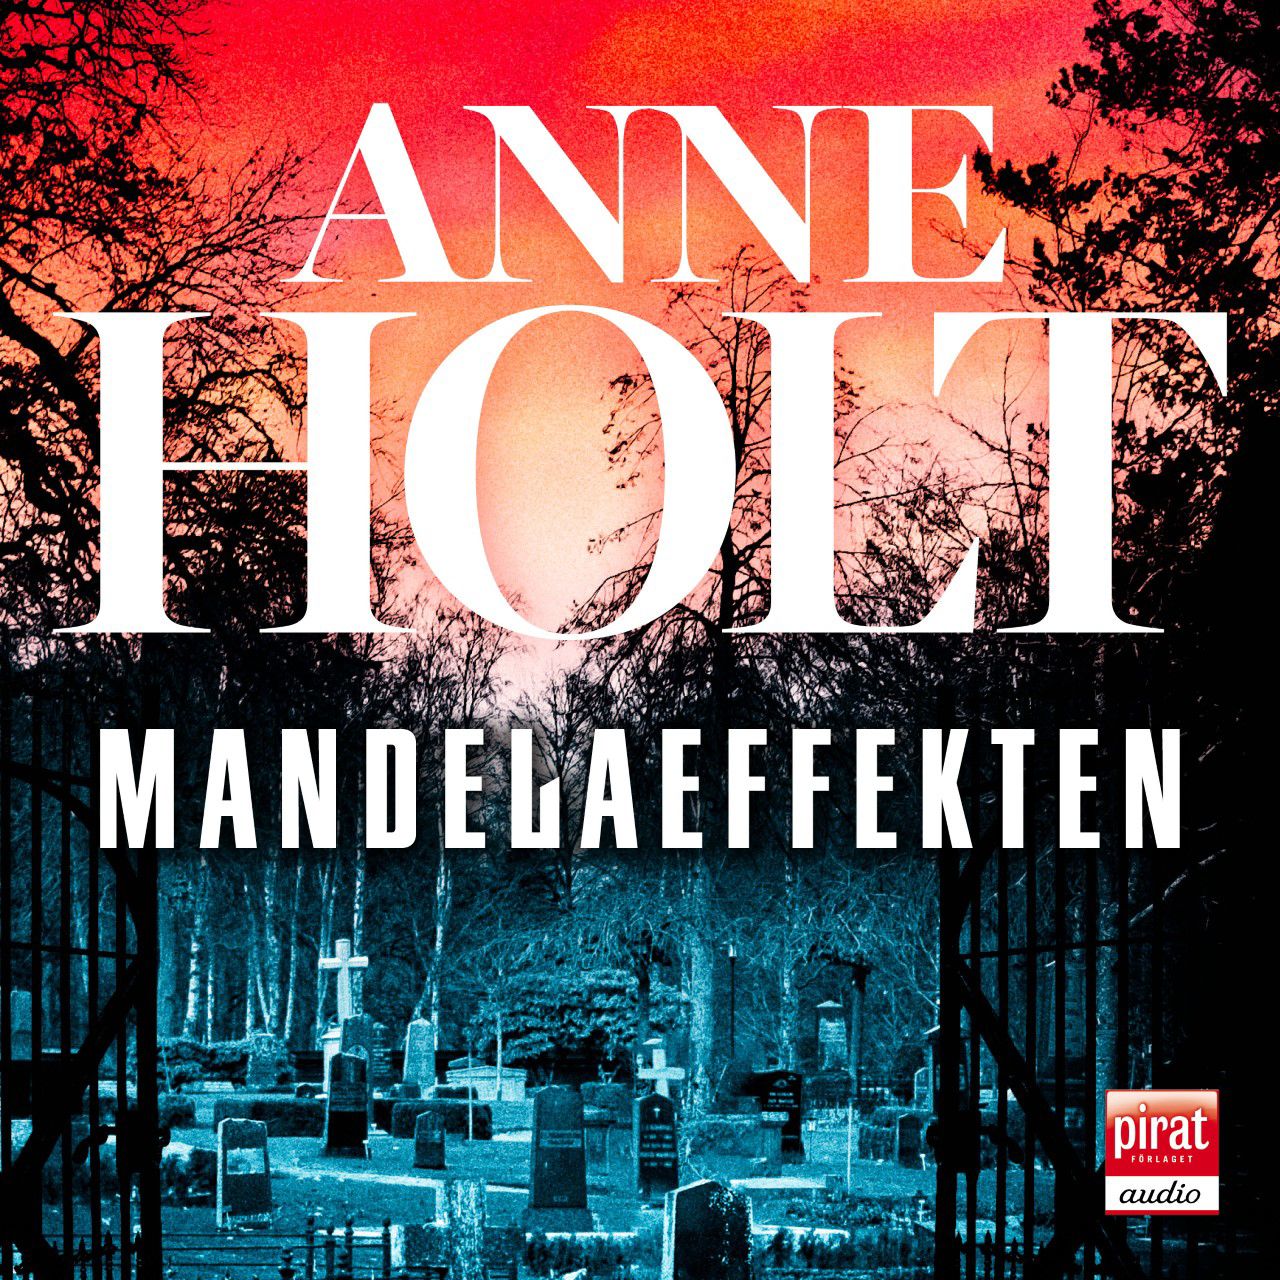 Mandelaeffekten, ljudbok av Anne Holt